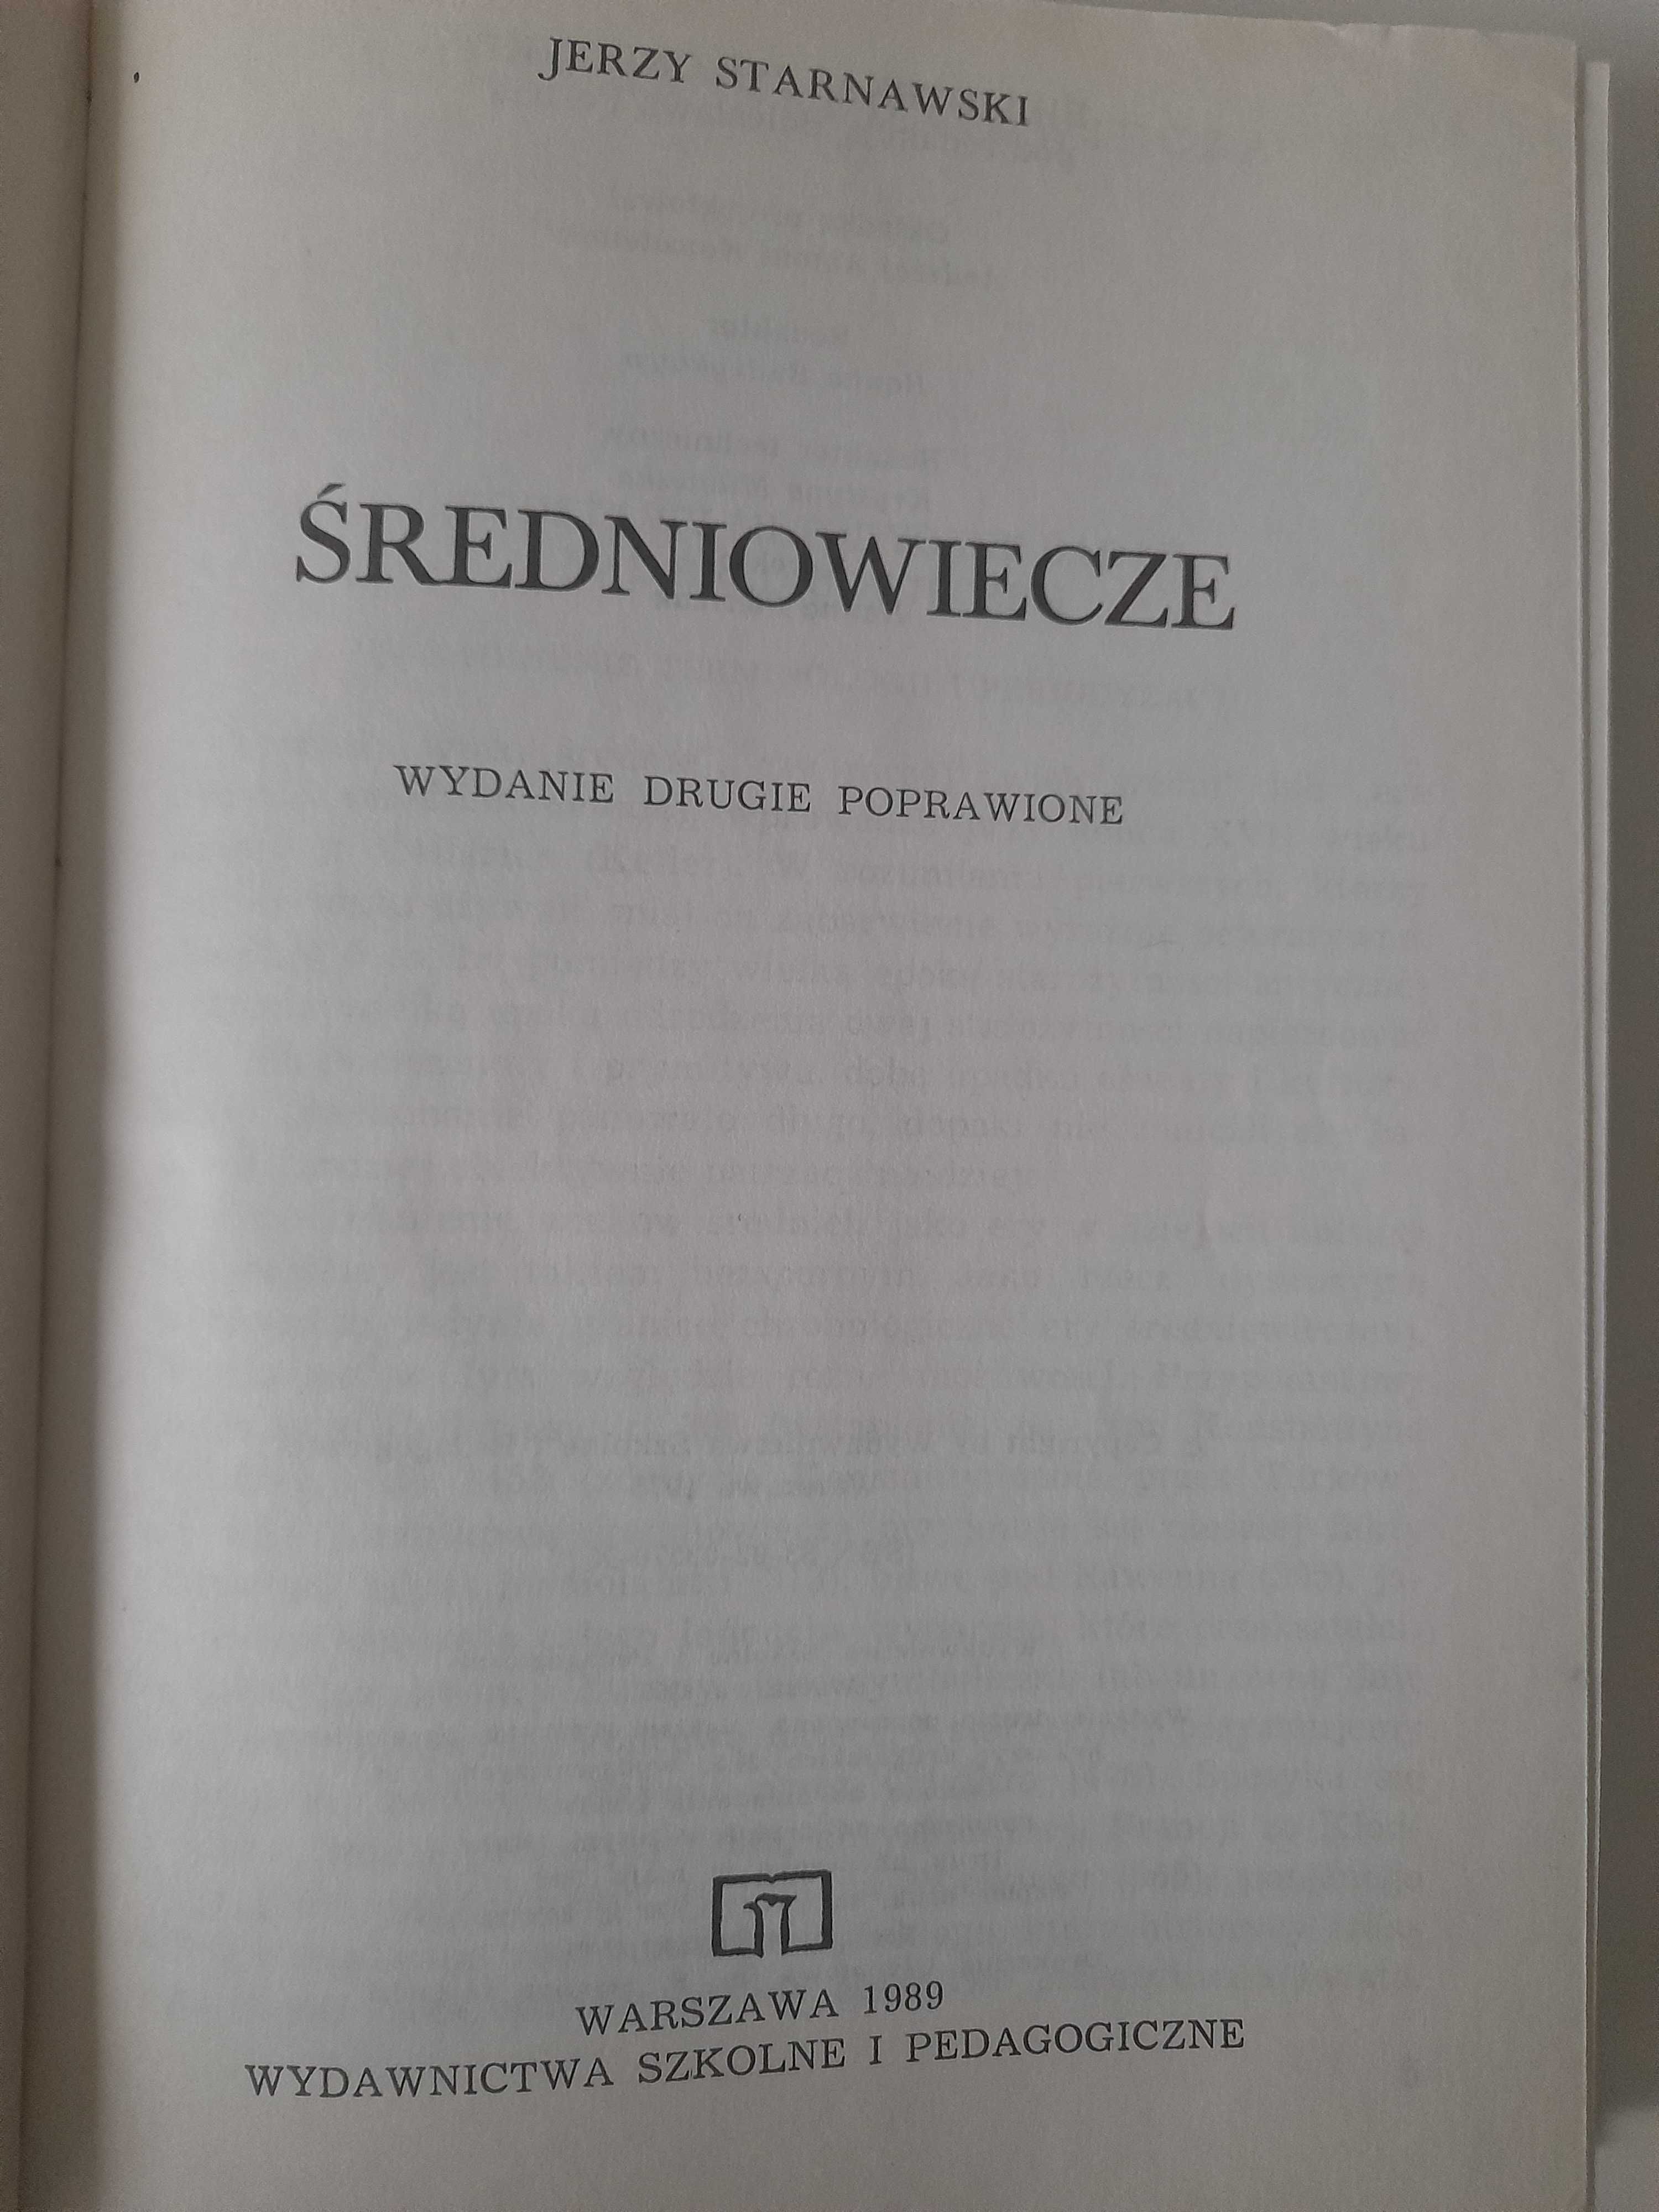 Średniowiecze Jerzy Starnawski